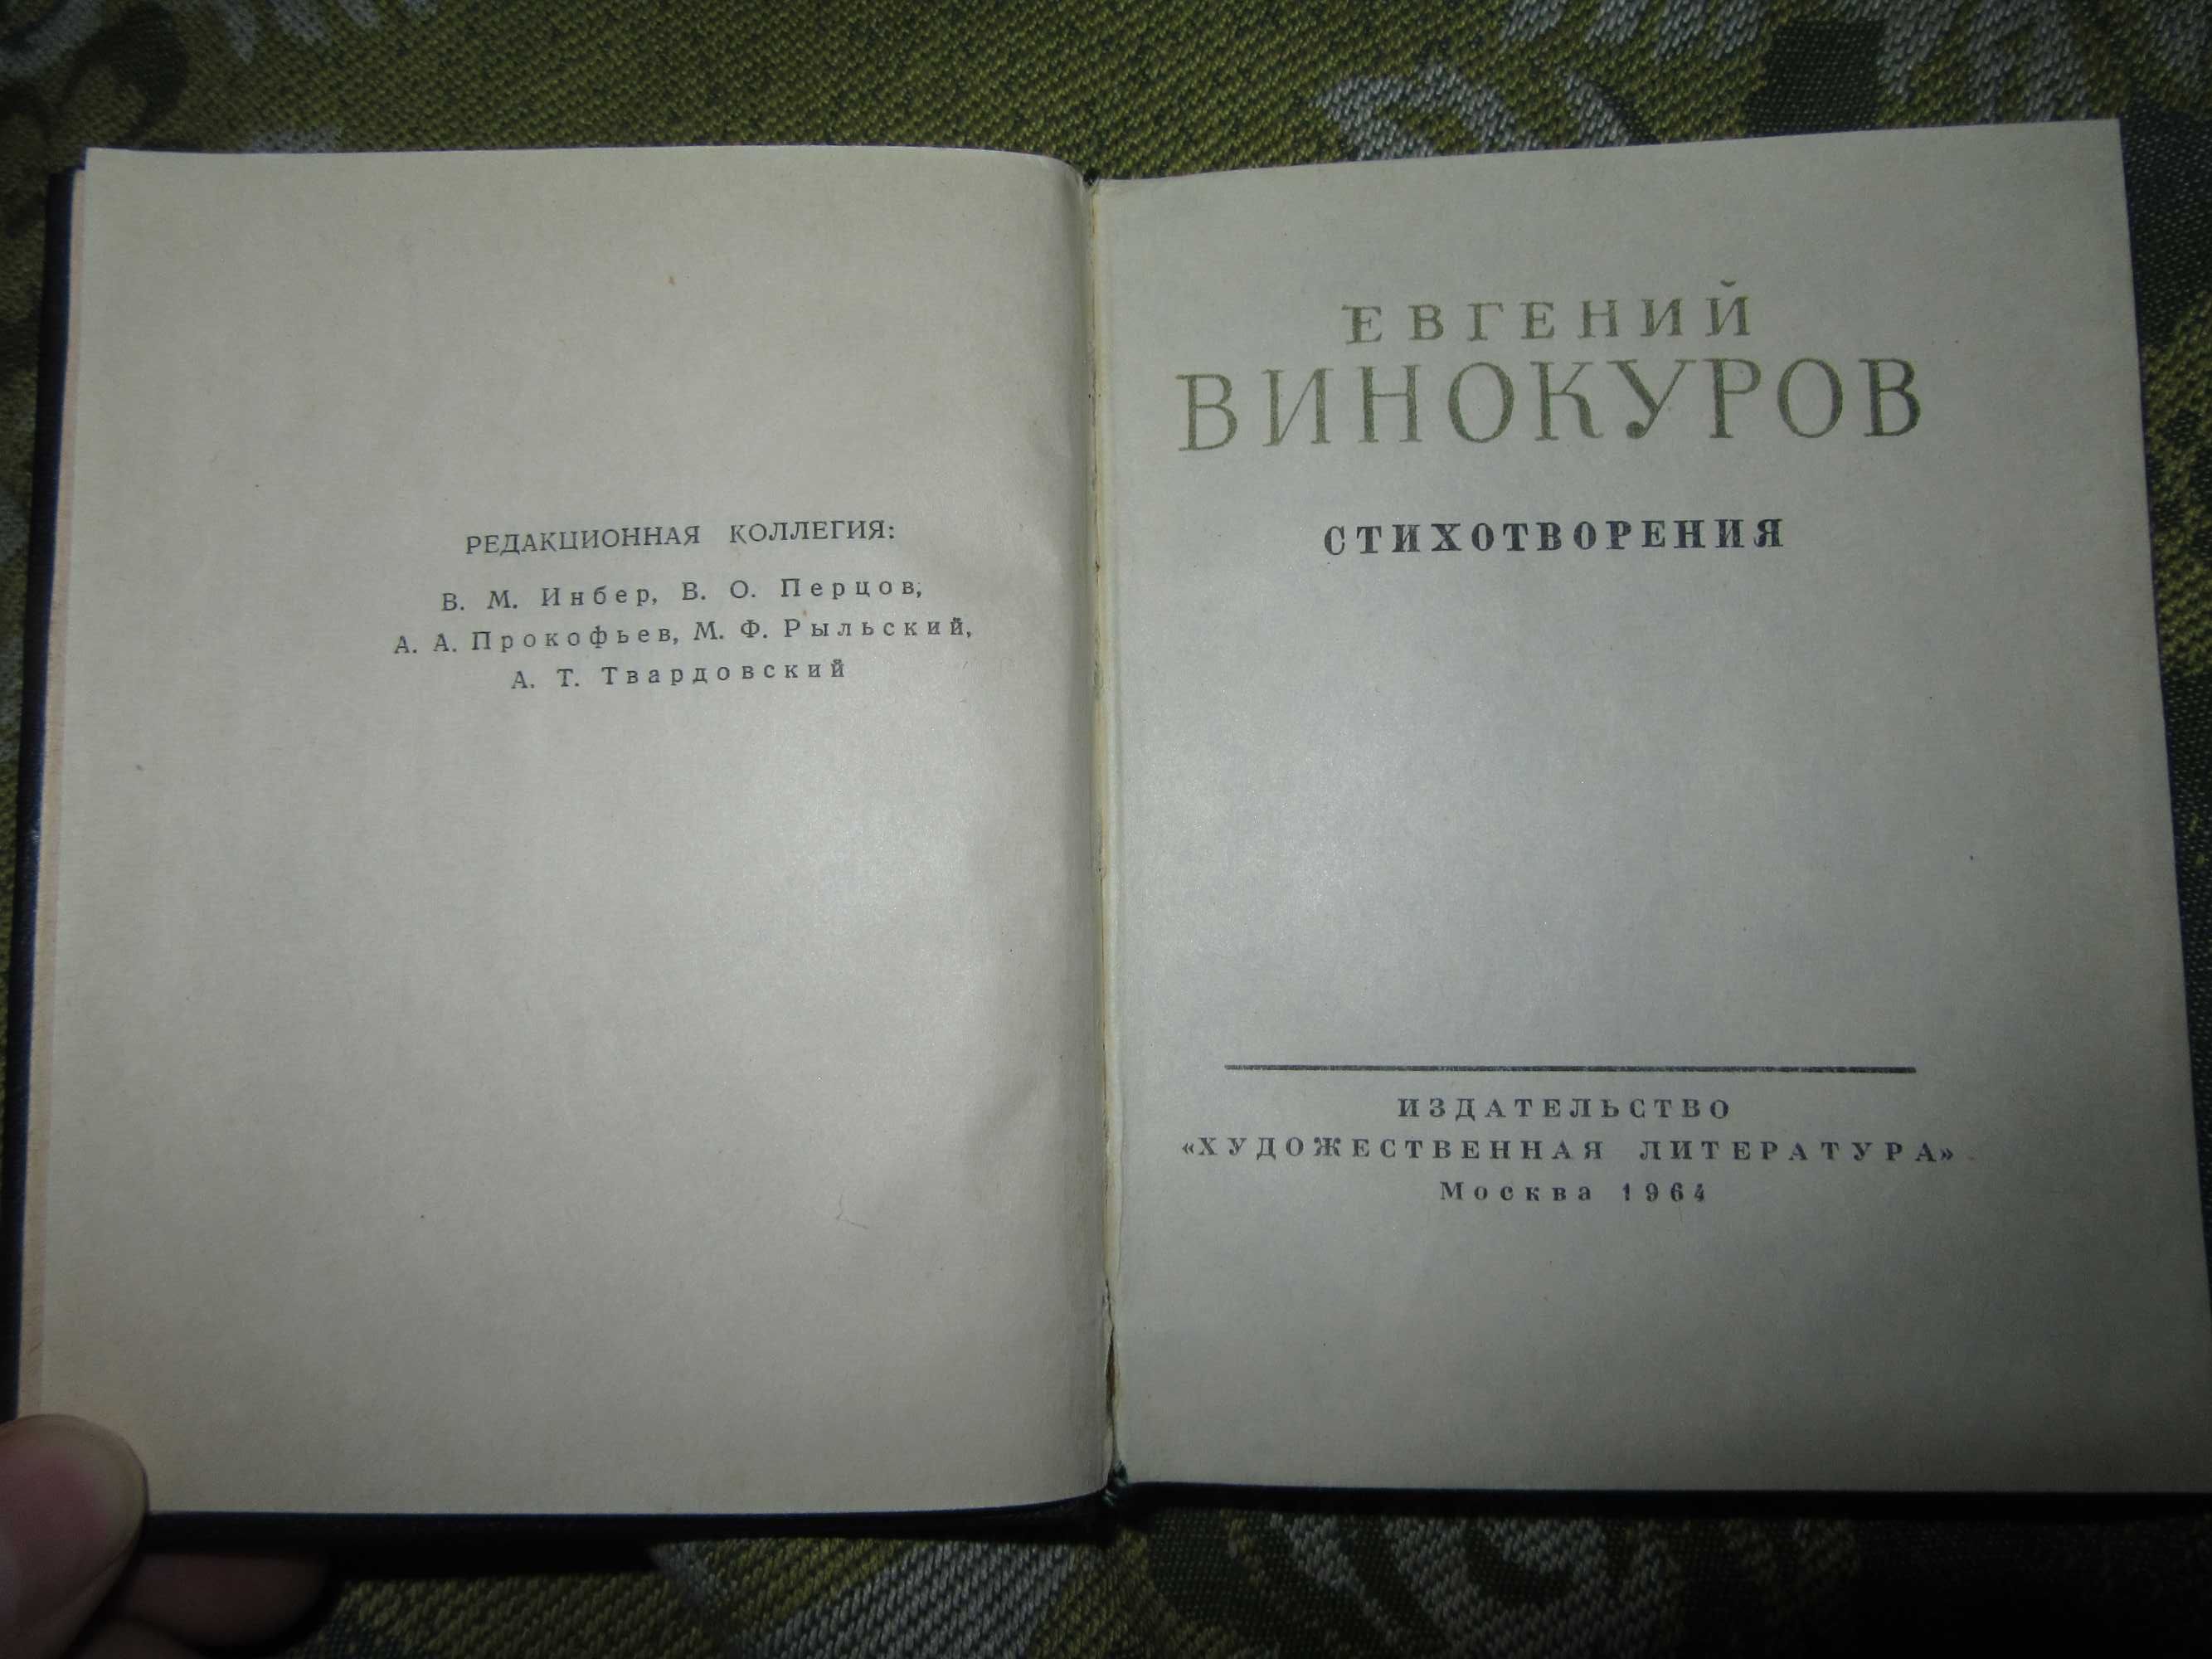 Евгений Винокуров. Стихотворения.Библиотека советской поэзии.1964 г.